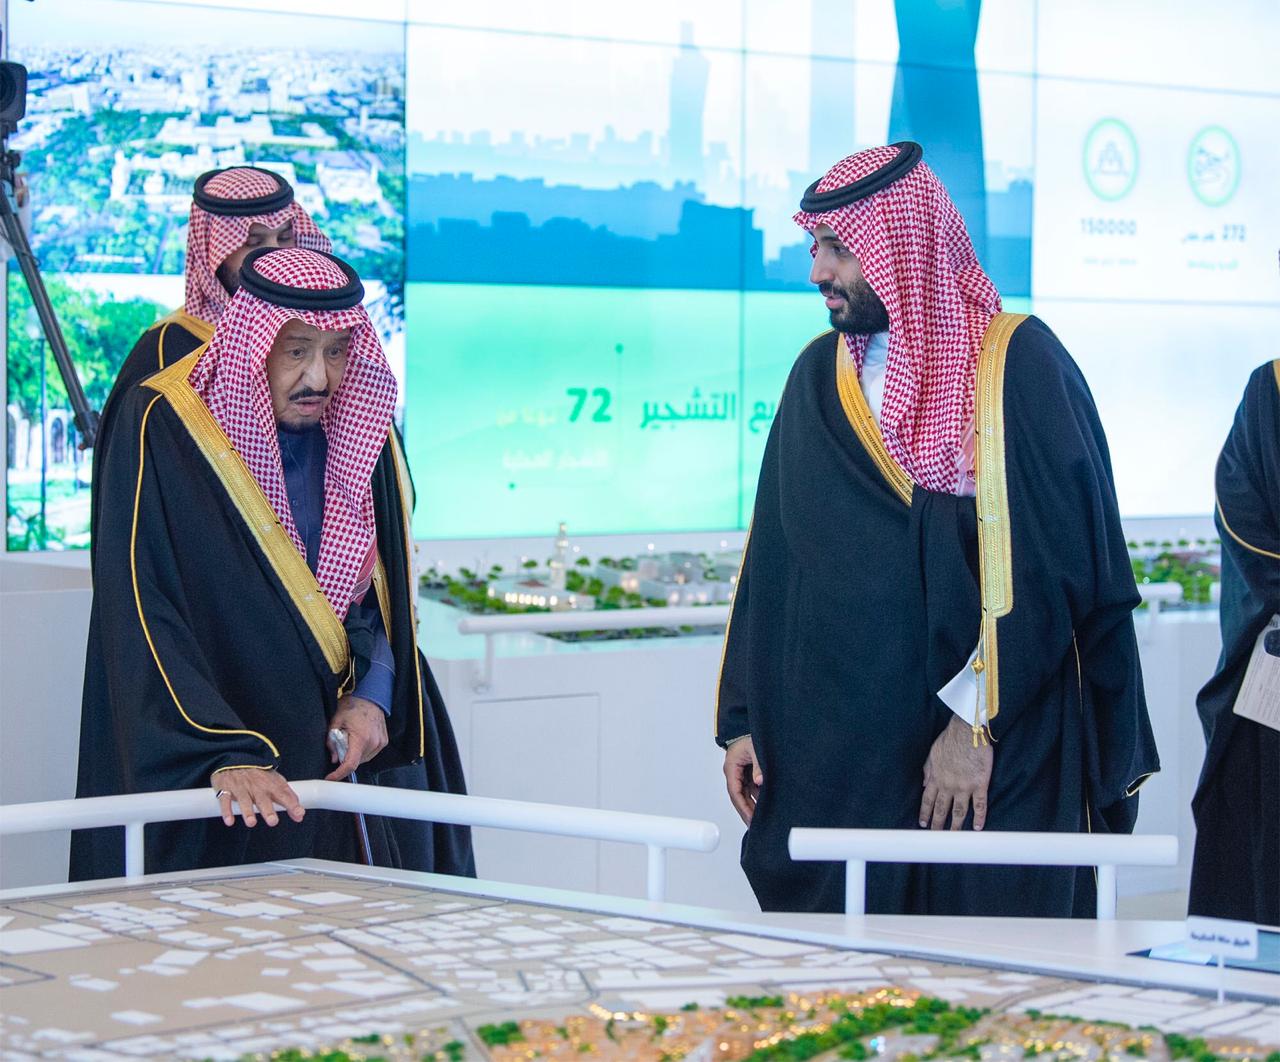 تفاصيل مشاريع الرياض الأربعة الكبرى بقيمة 86 مليار ريال